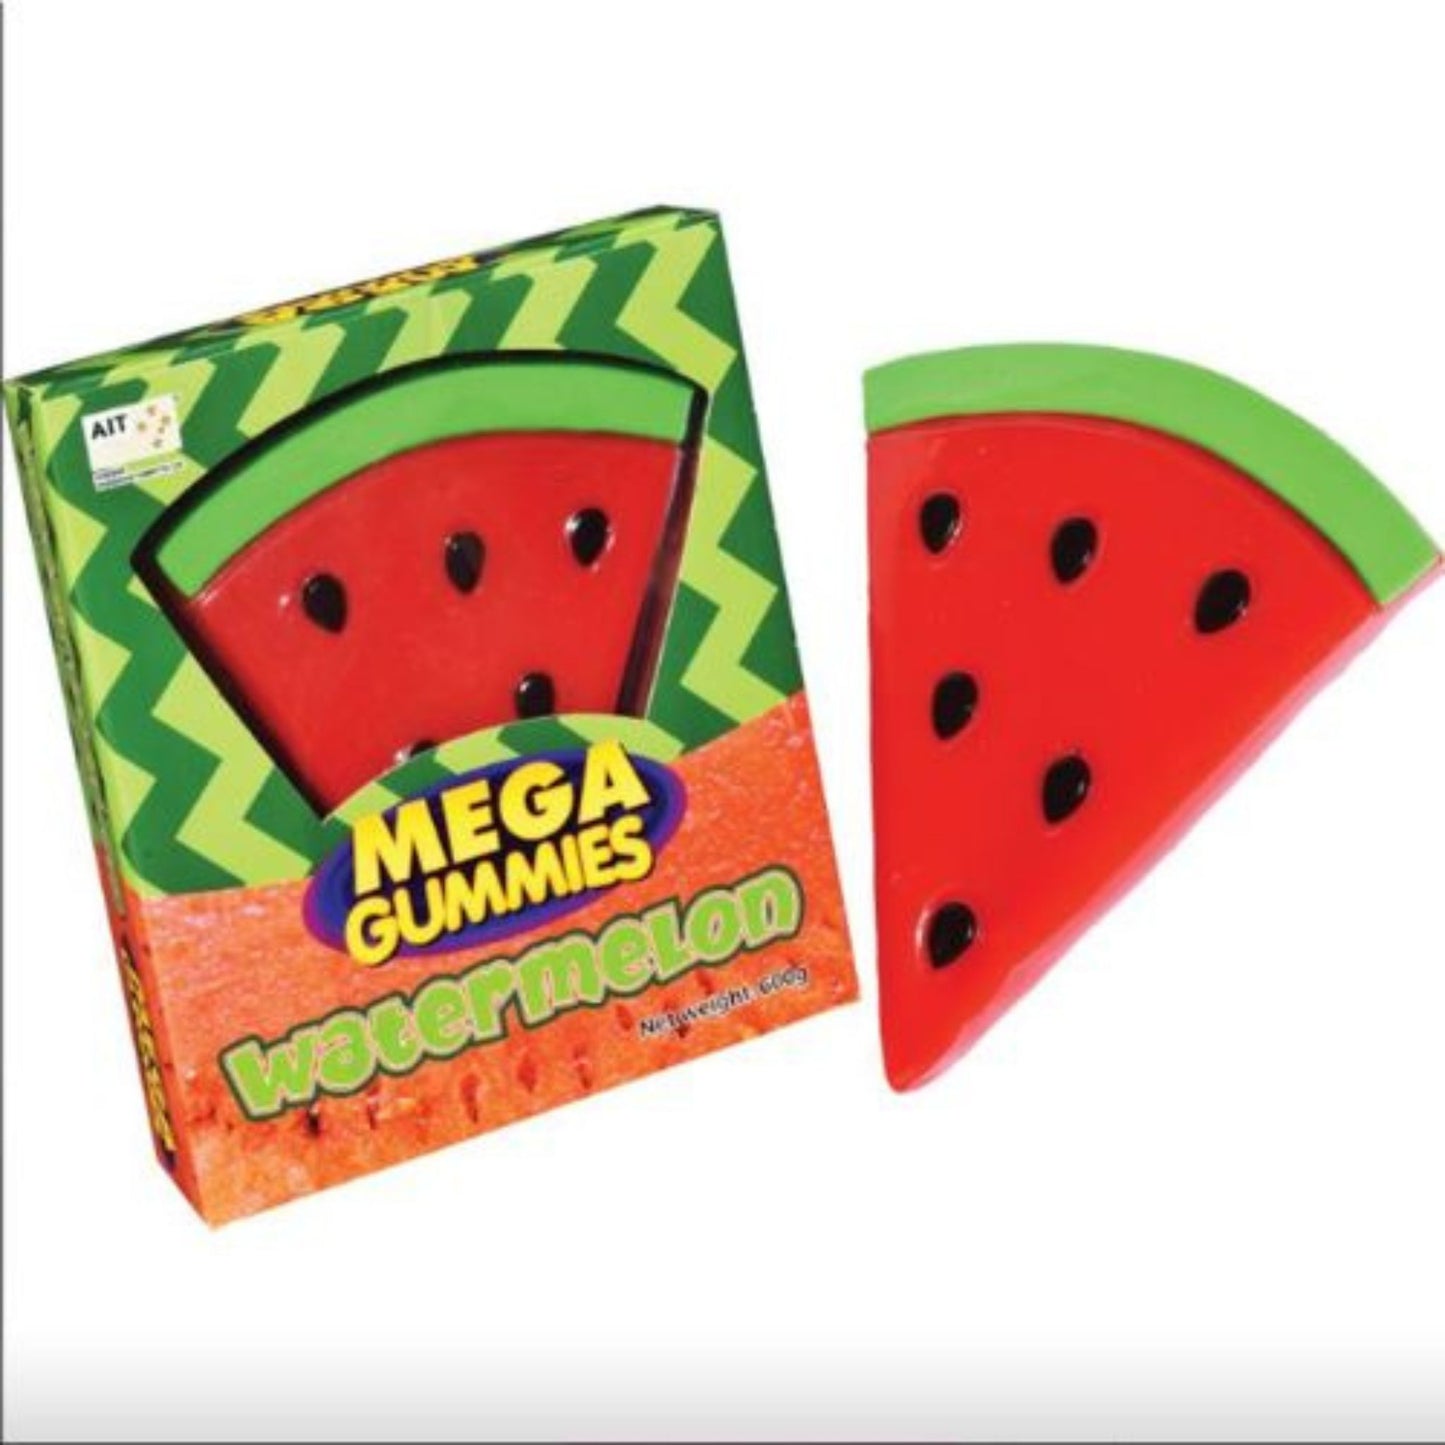 Giant Gummy Watermelon Slice - 600g